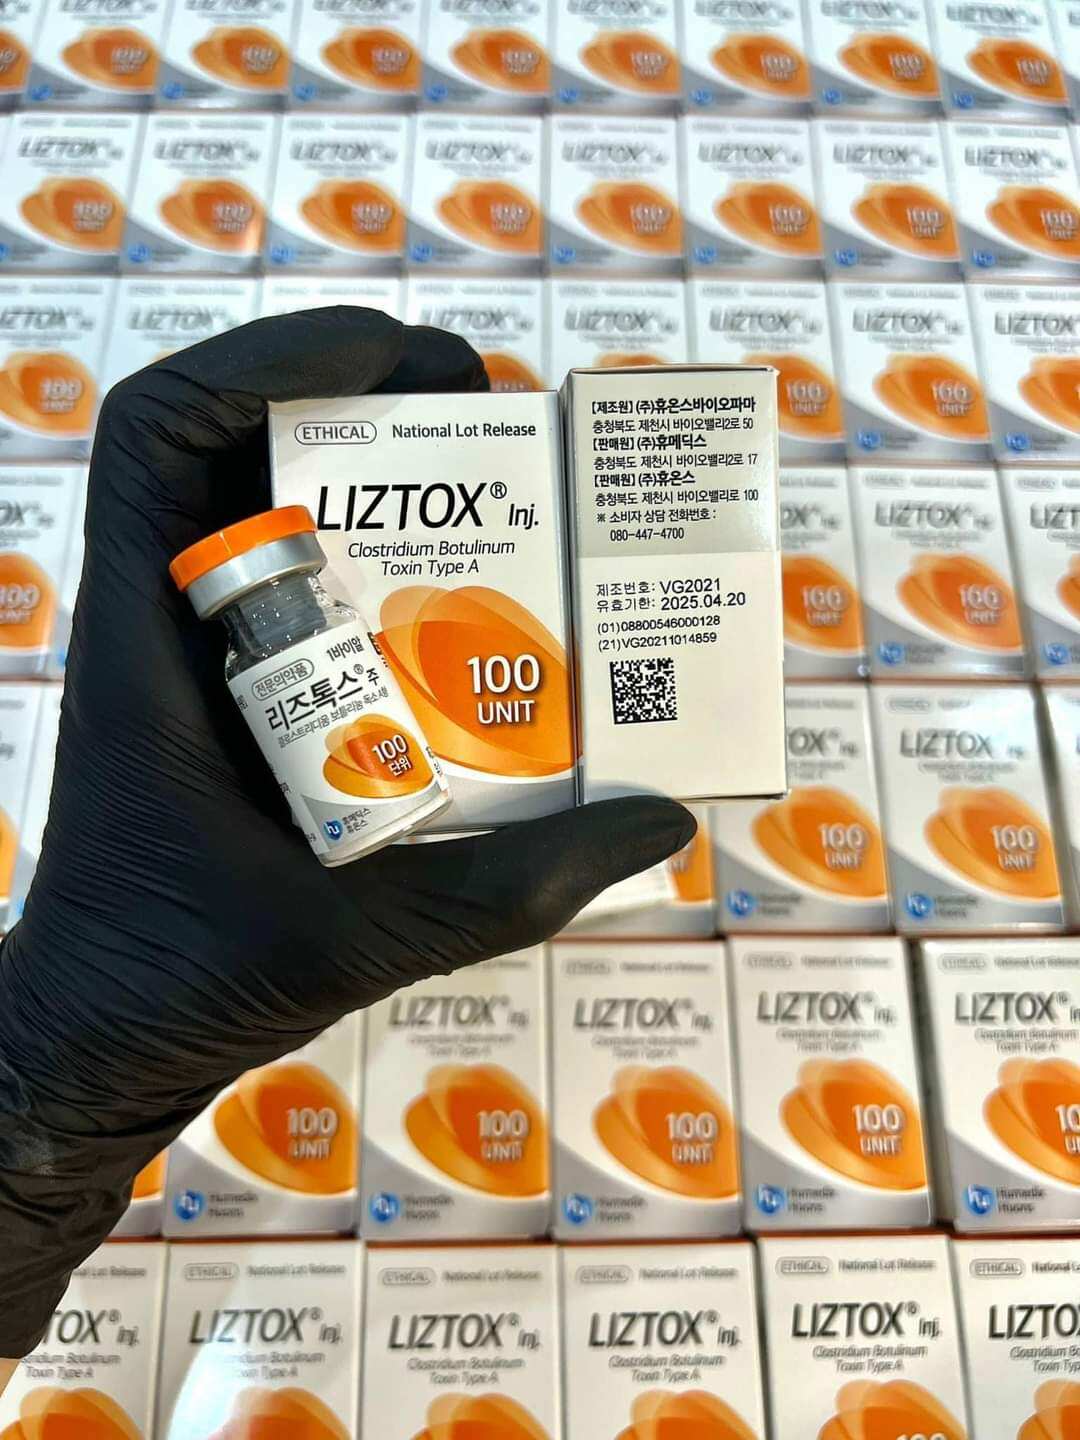 Tinh chất thon gọn hàm Liztox 100 units